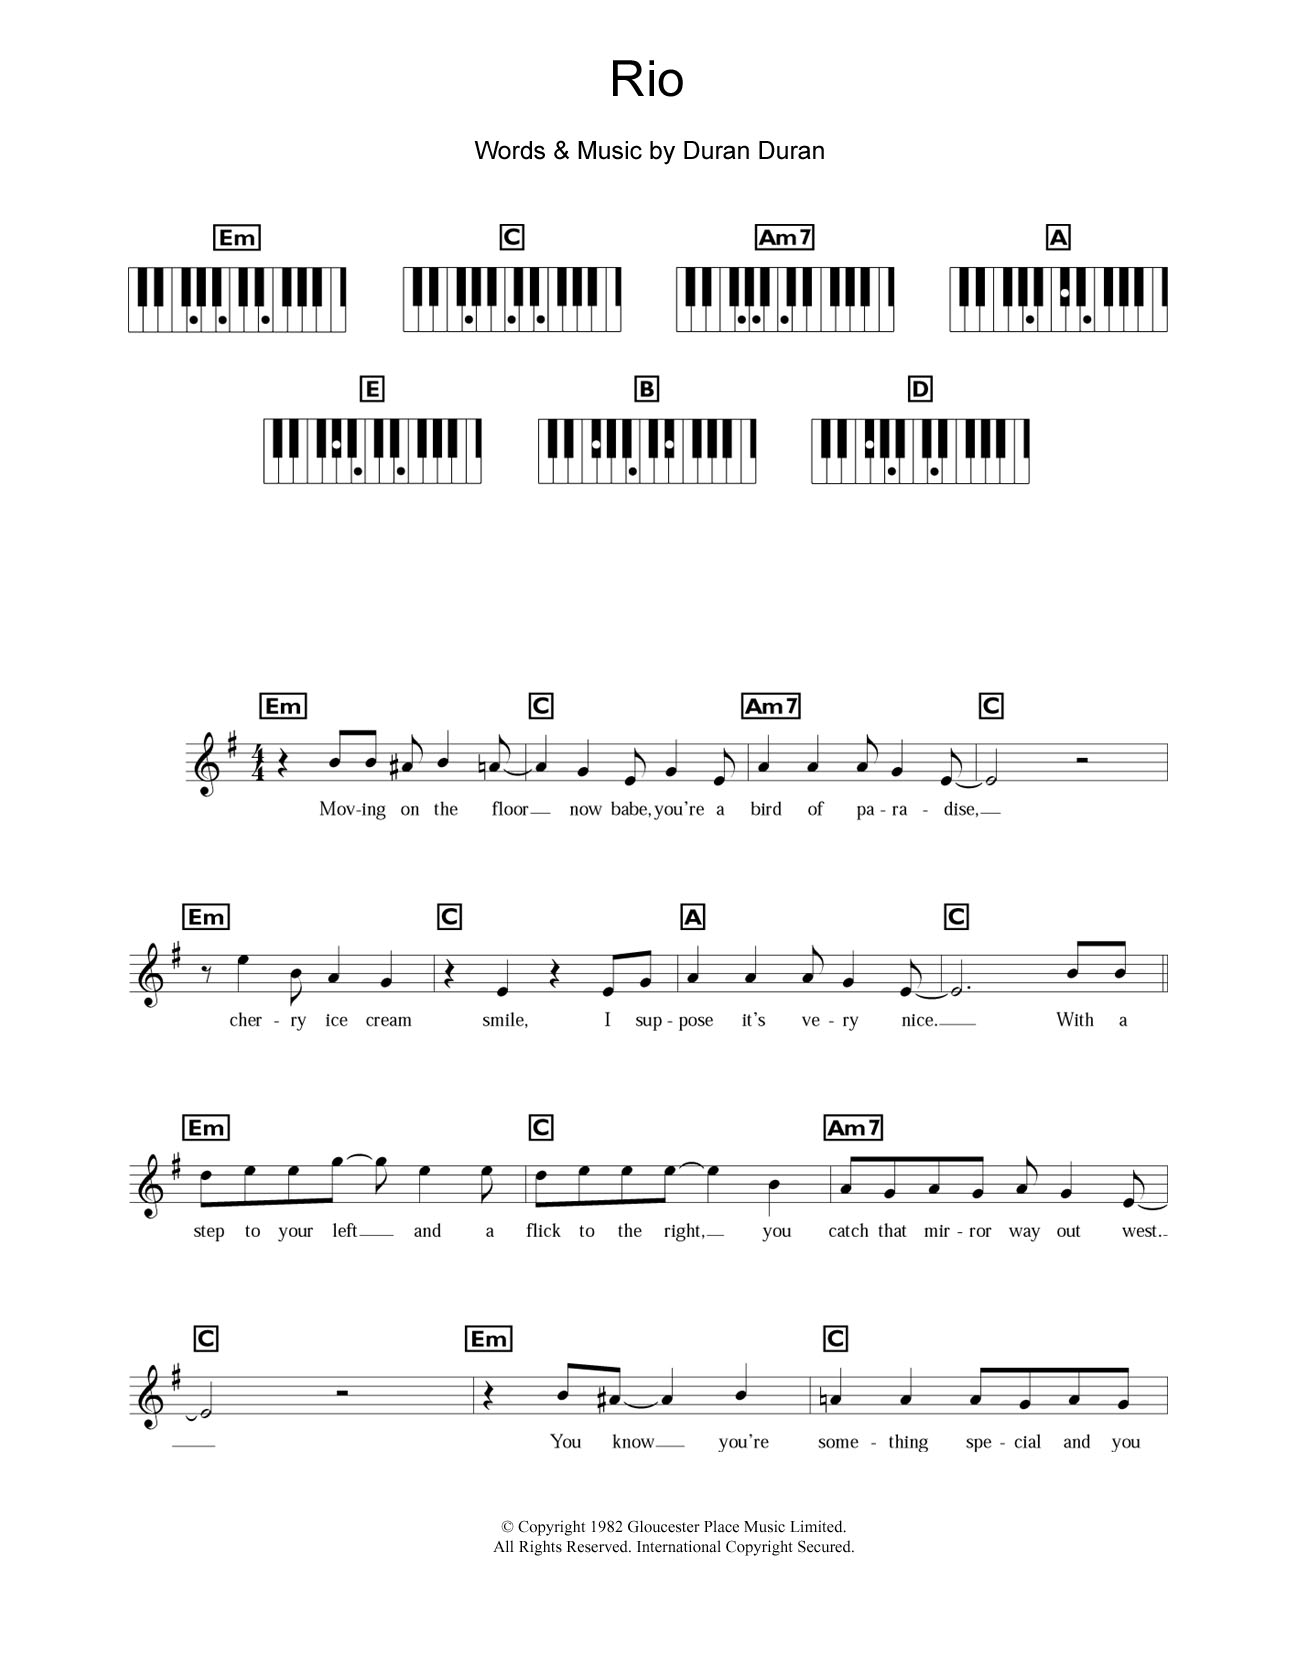 Duran Duran Rio Sheet Music Notes & Chords for Lyrics & Chords - Download or Print PDF